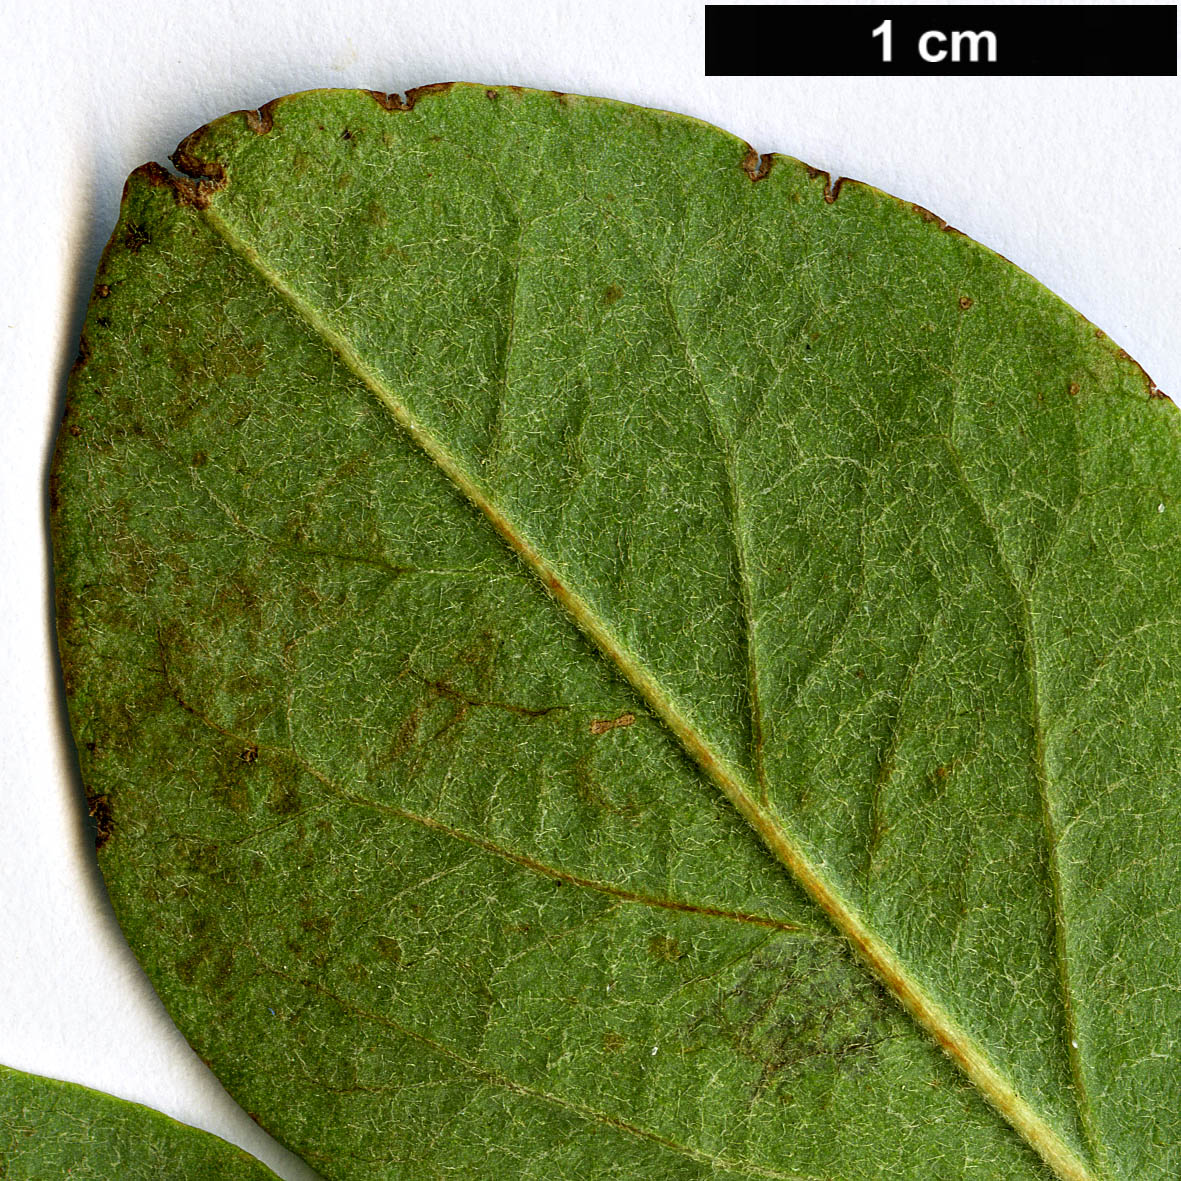 High resolution image: Family: Rosaceae - Genus: Cotoneaster - Taxon: transcaucasicus